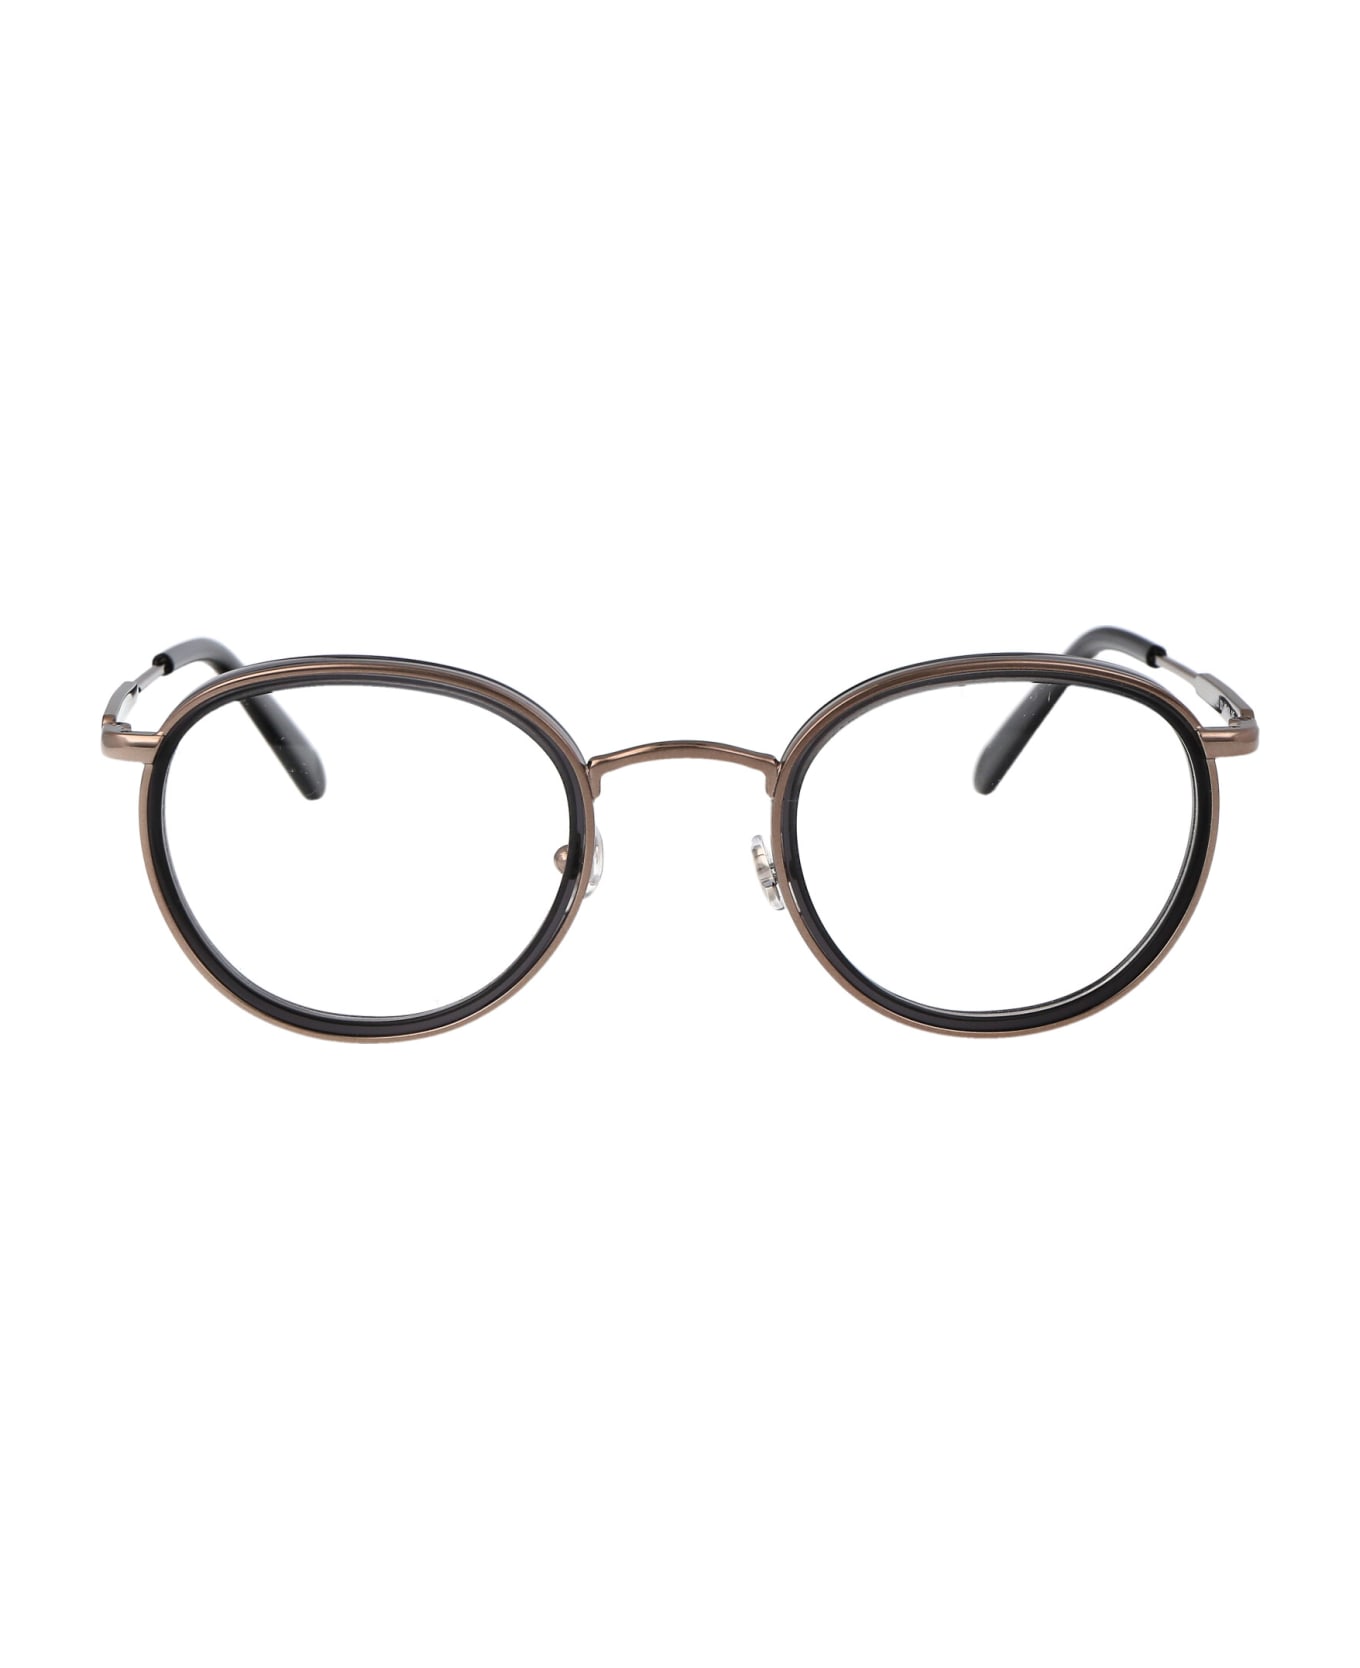 Moncler Eyewear Ml5153 Glasses - 001 Nero Lucido